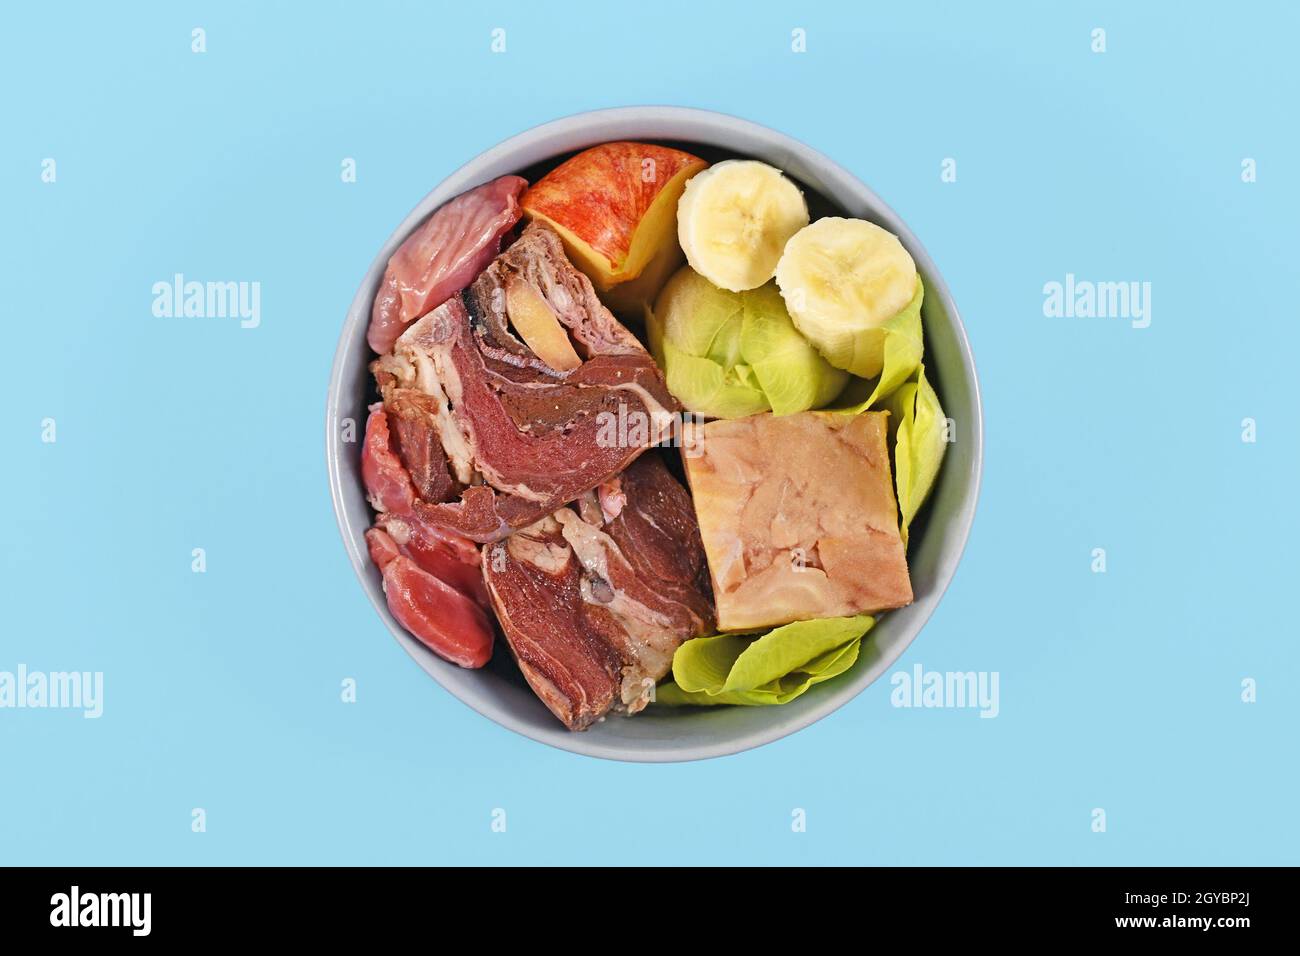 Bol pour chien avec des aliments crus appropriés comme des morceaux de viande crue, des légumes et des fruits sur fond bleu Banque D'Images